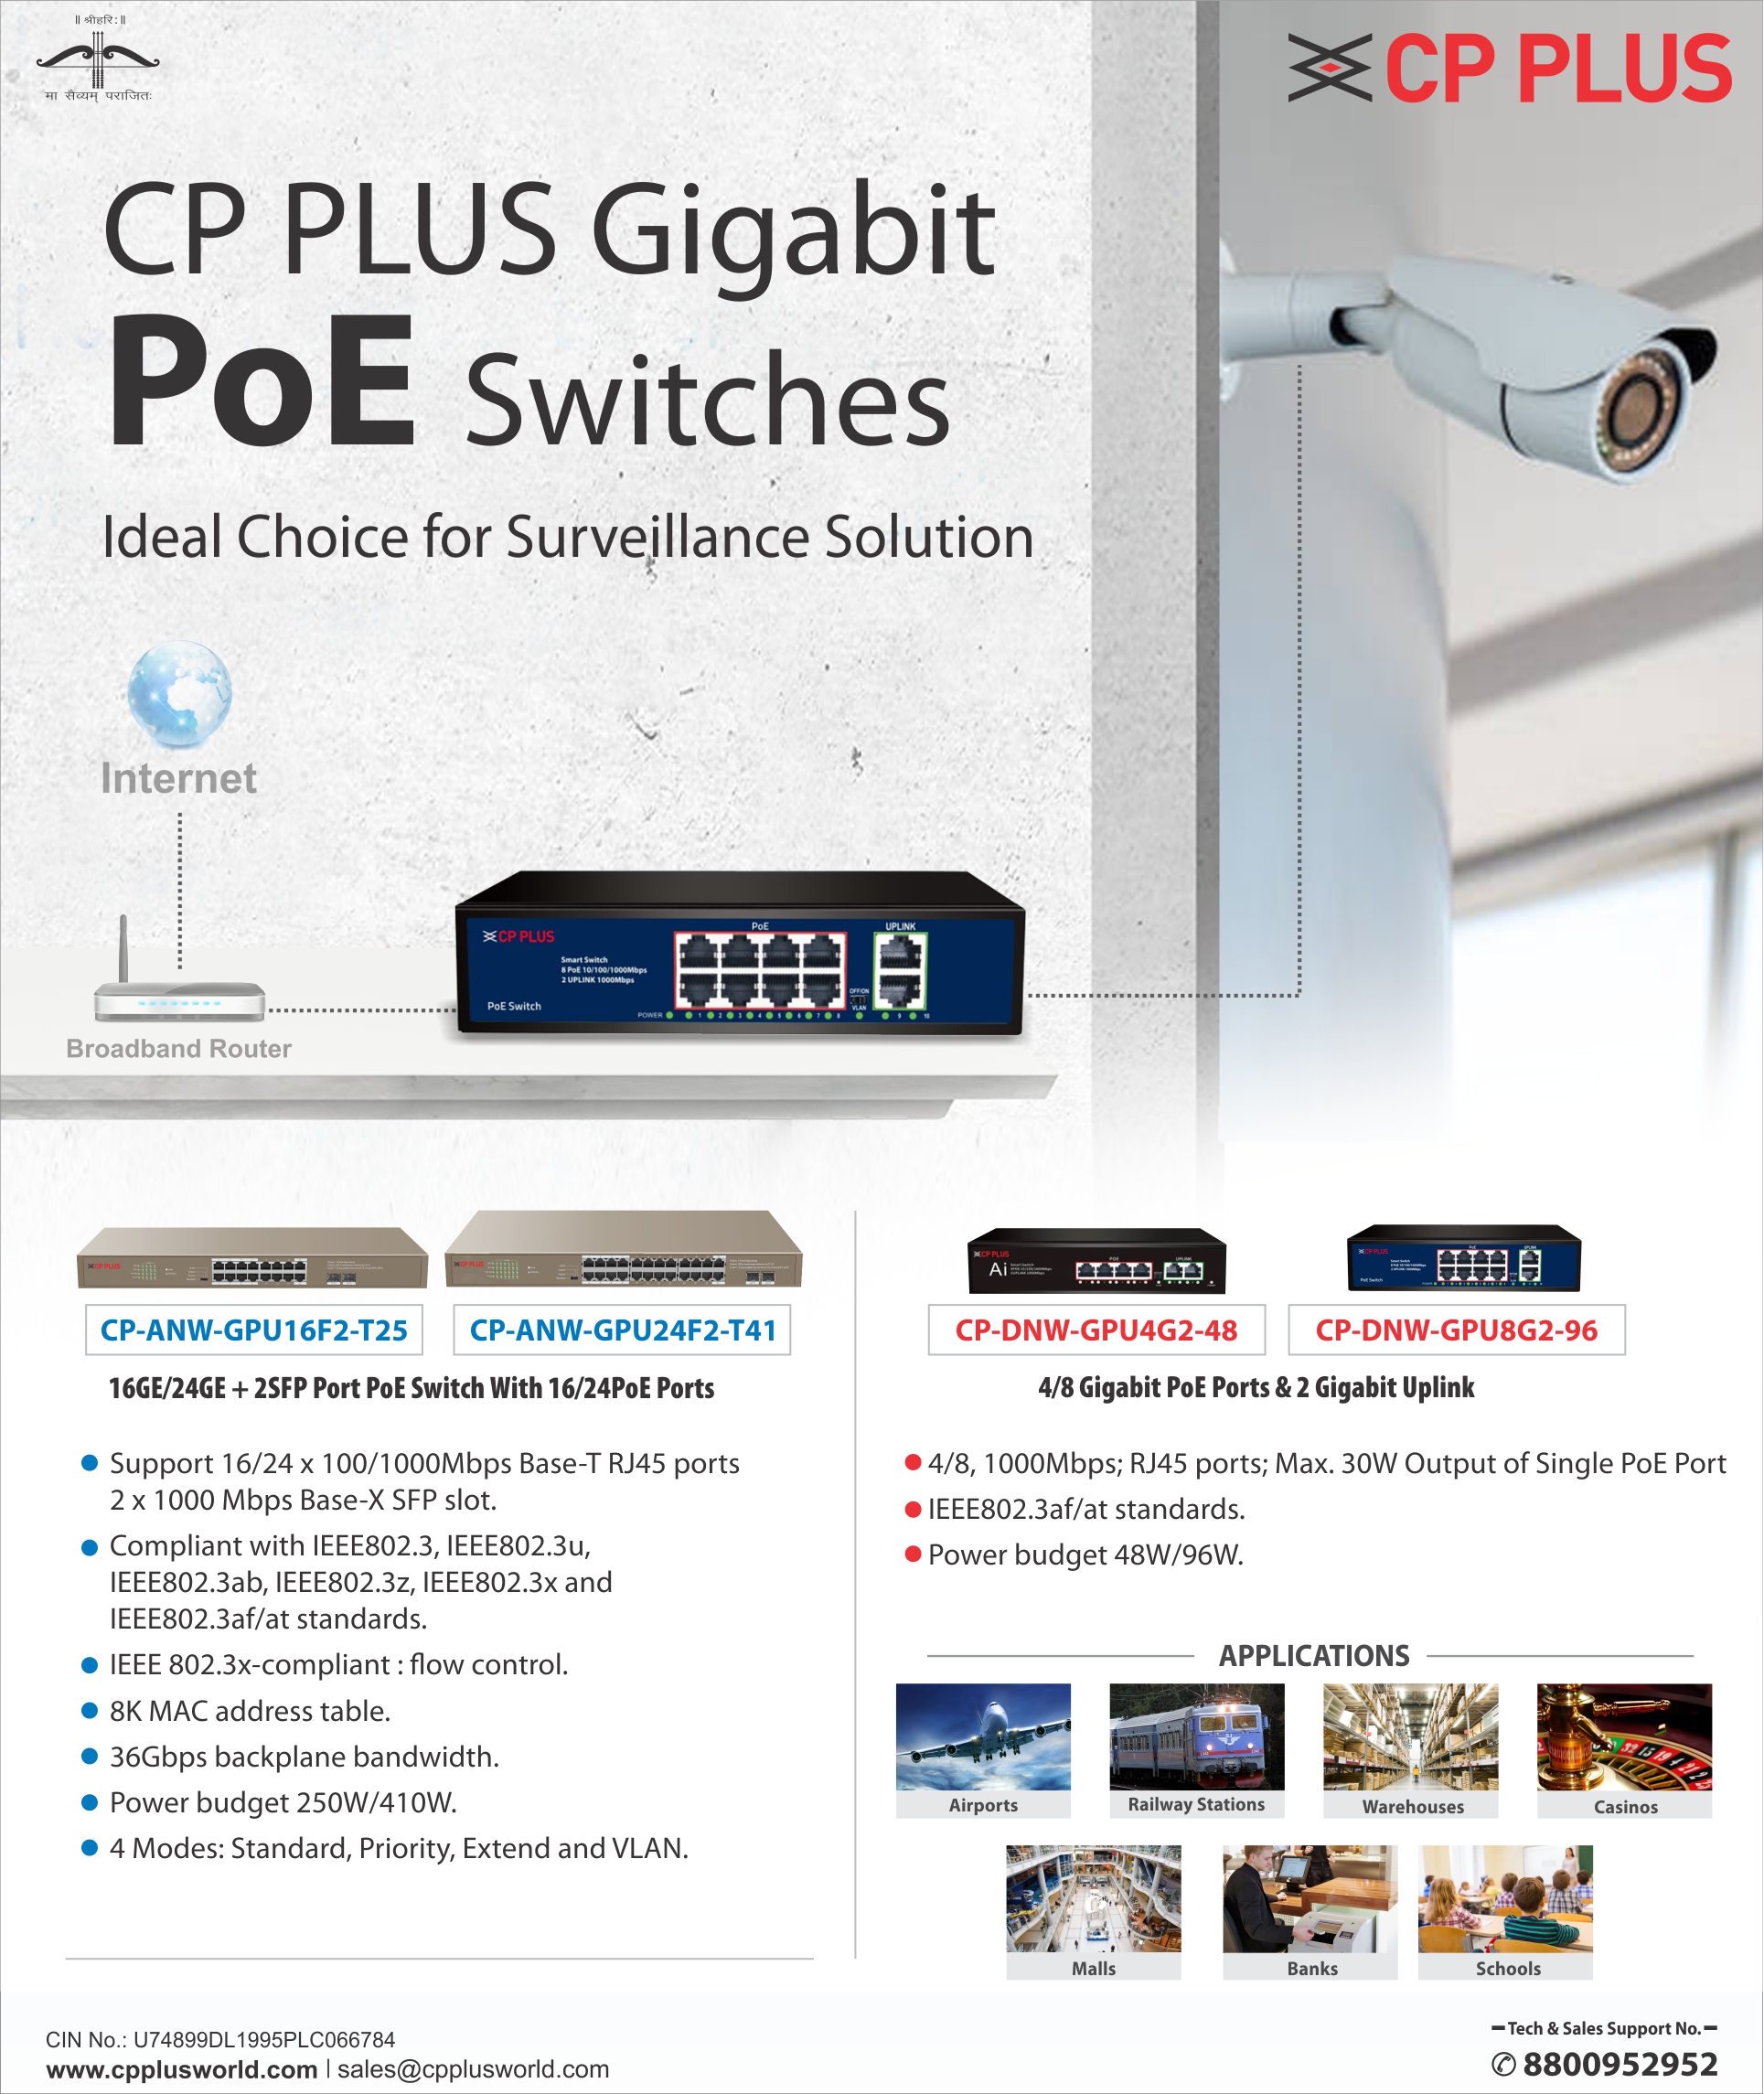 Gigabit PoE Switches